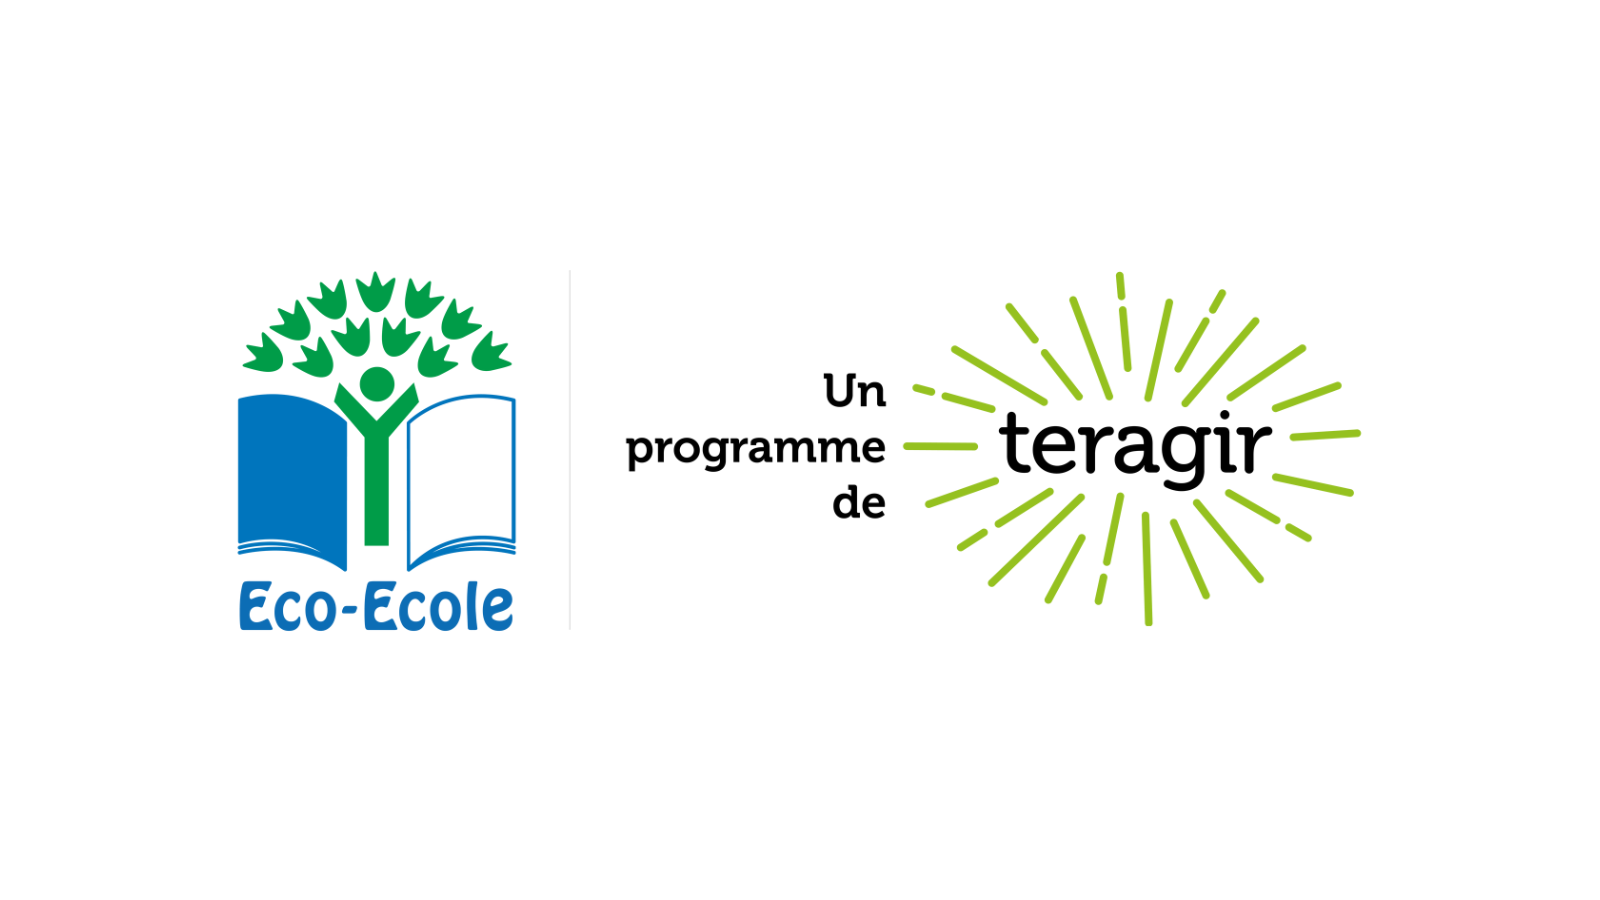 (c) Eco-ecole.org